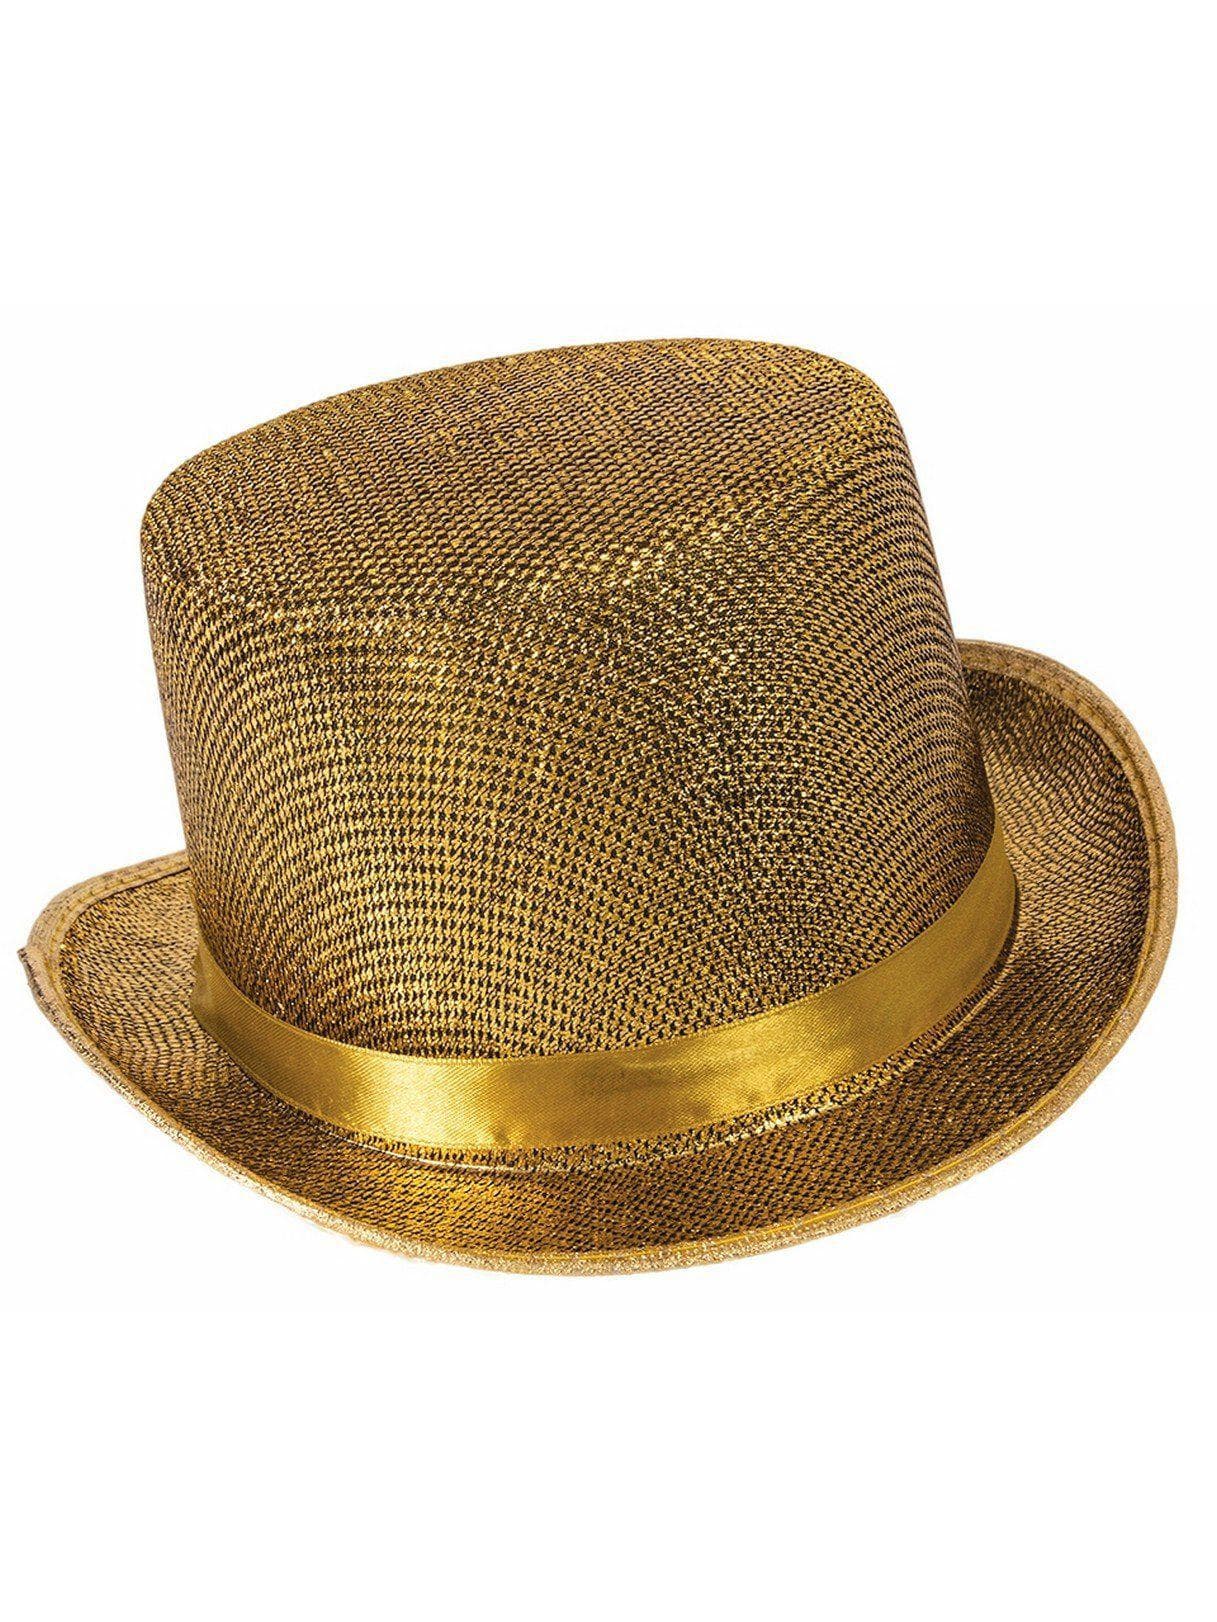 Adult Gold Classic Top Hat - costumes.com